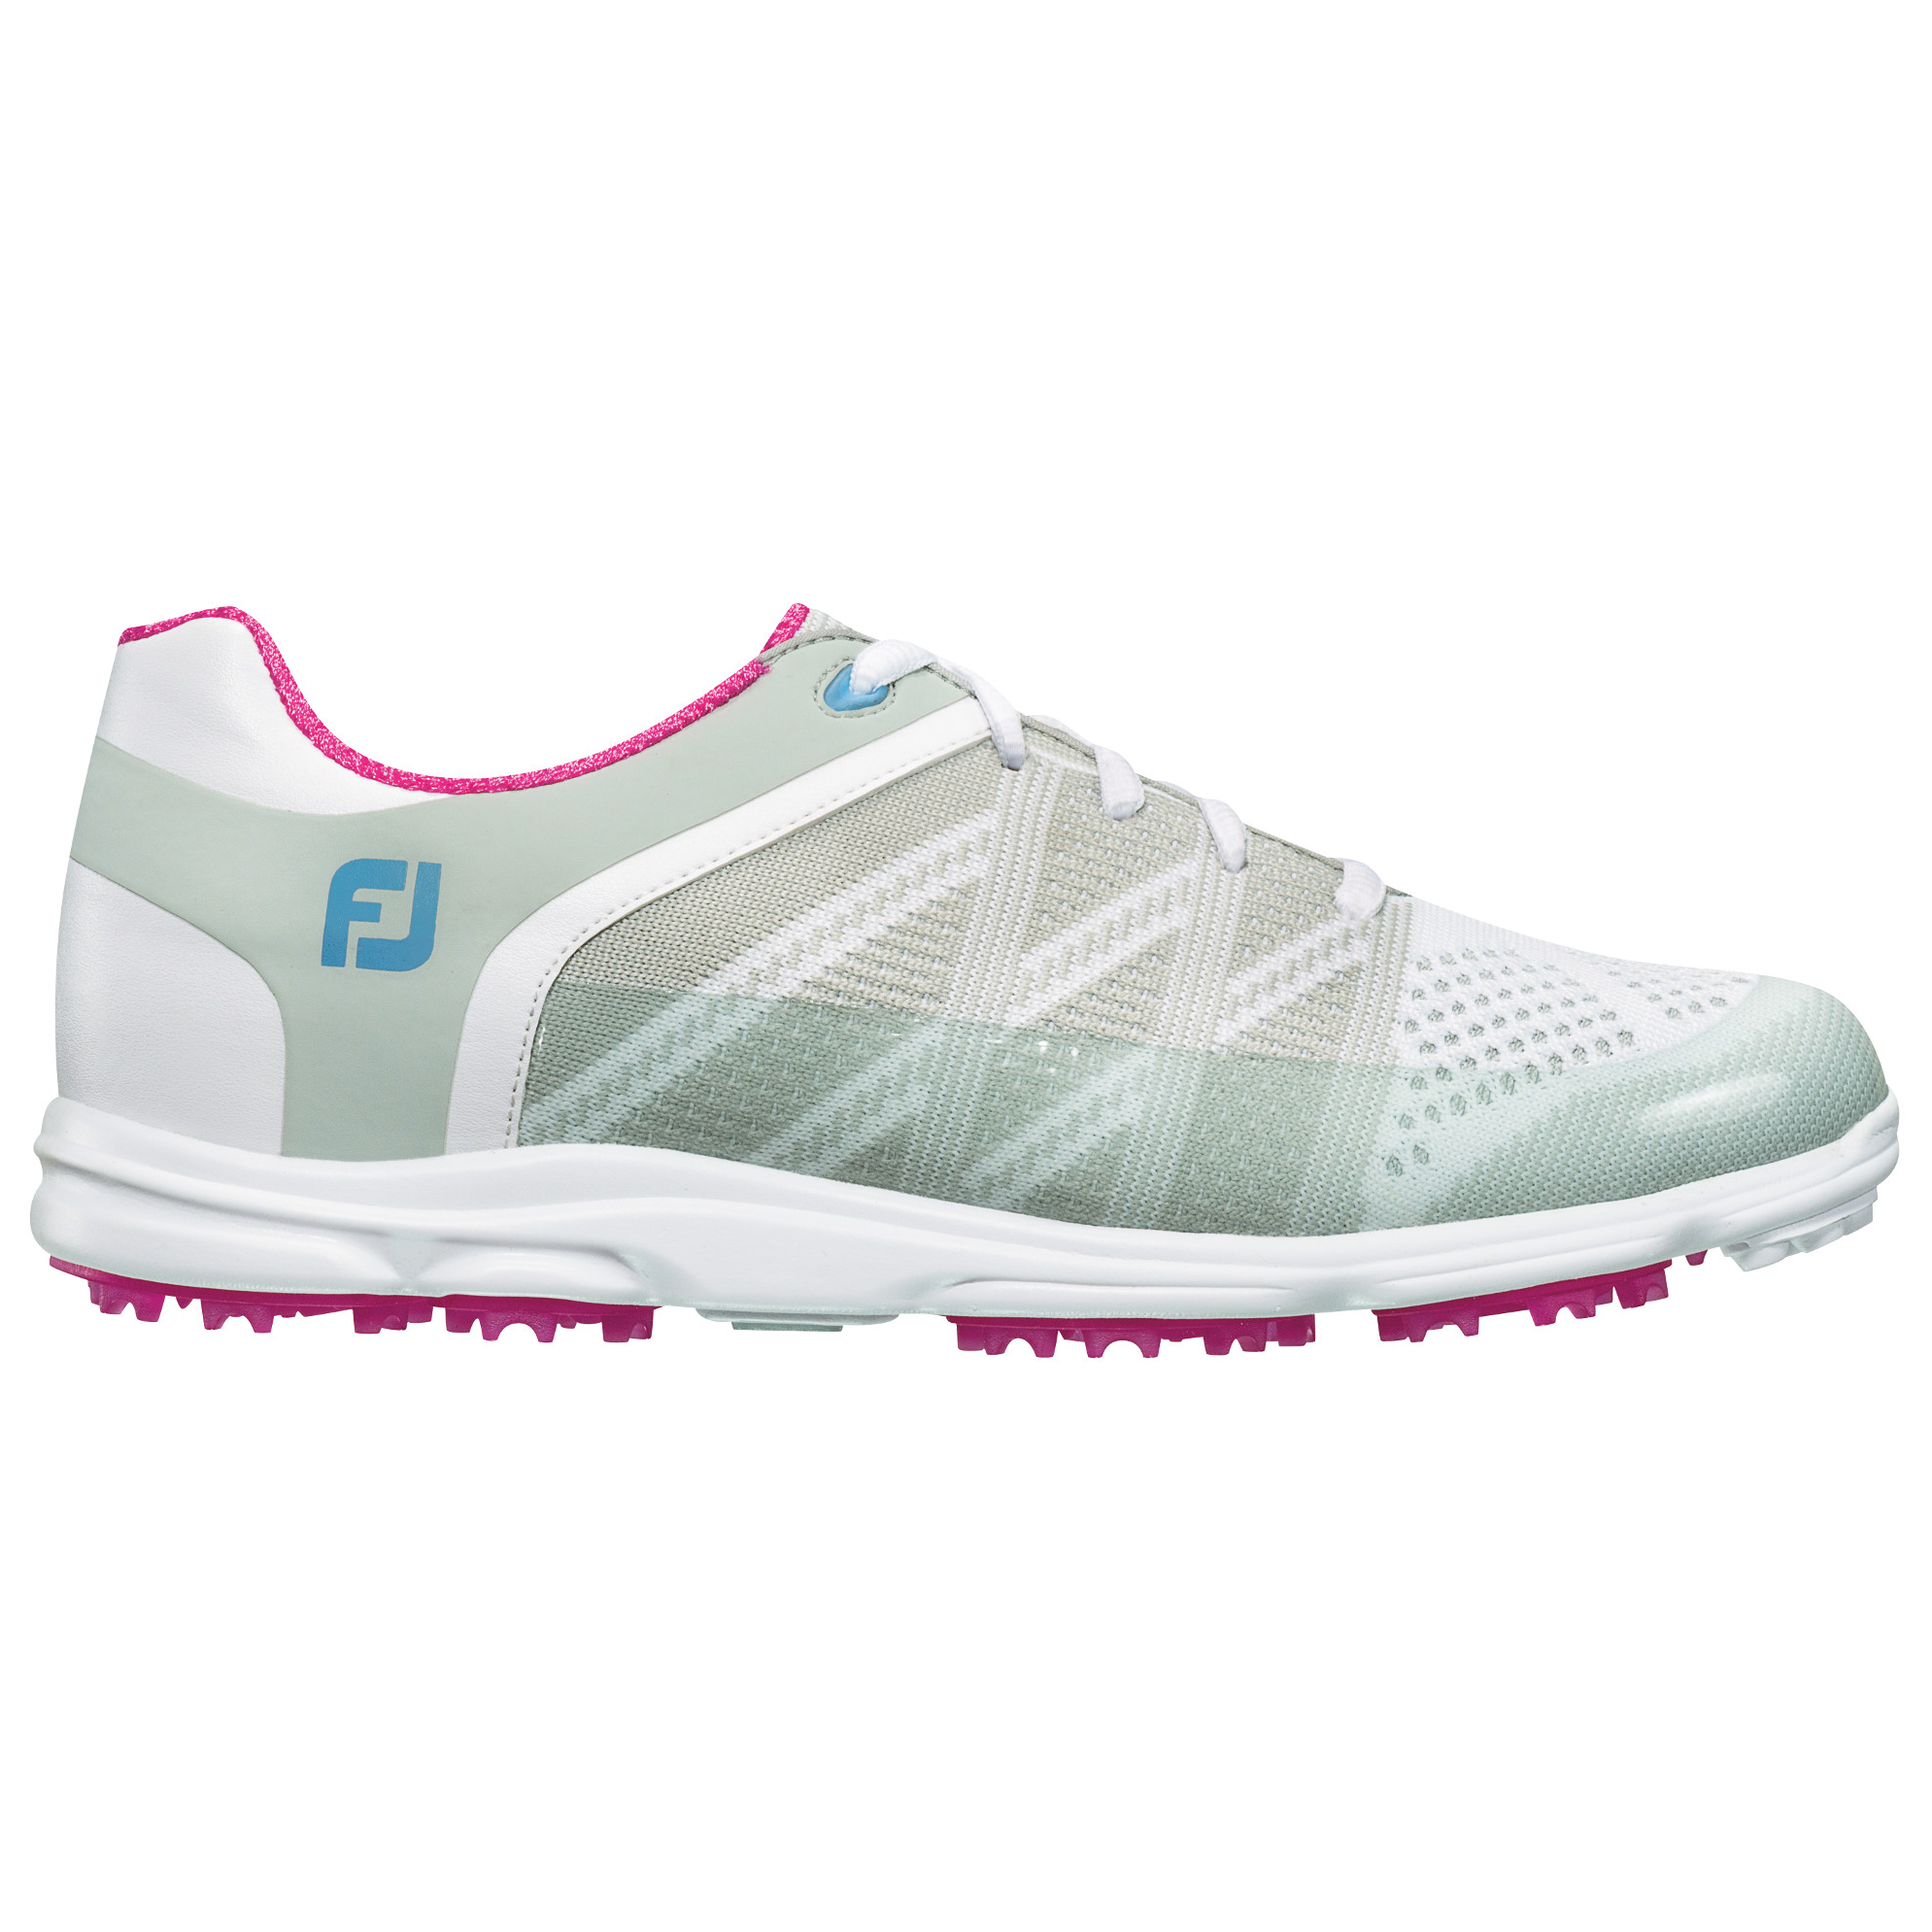 FooJoy Sport SL Women's Golf Shoe 